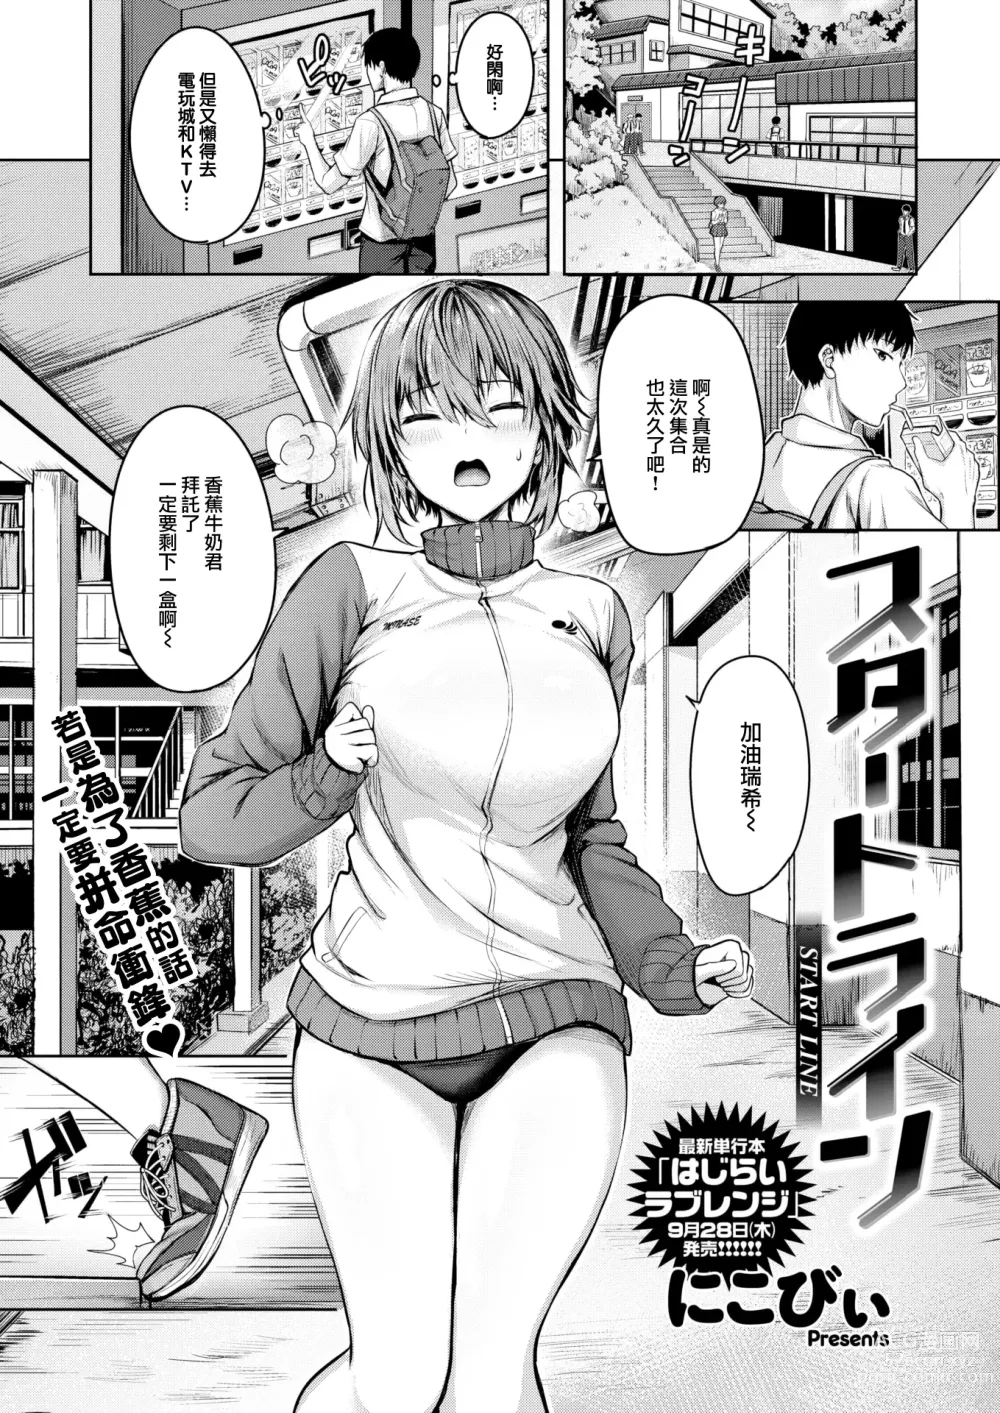 Page 2 of manga Start line